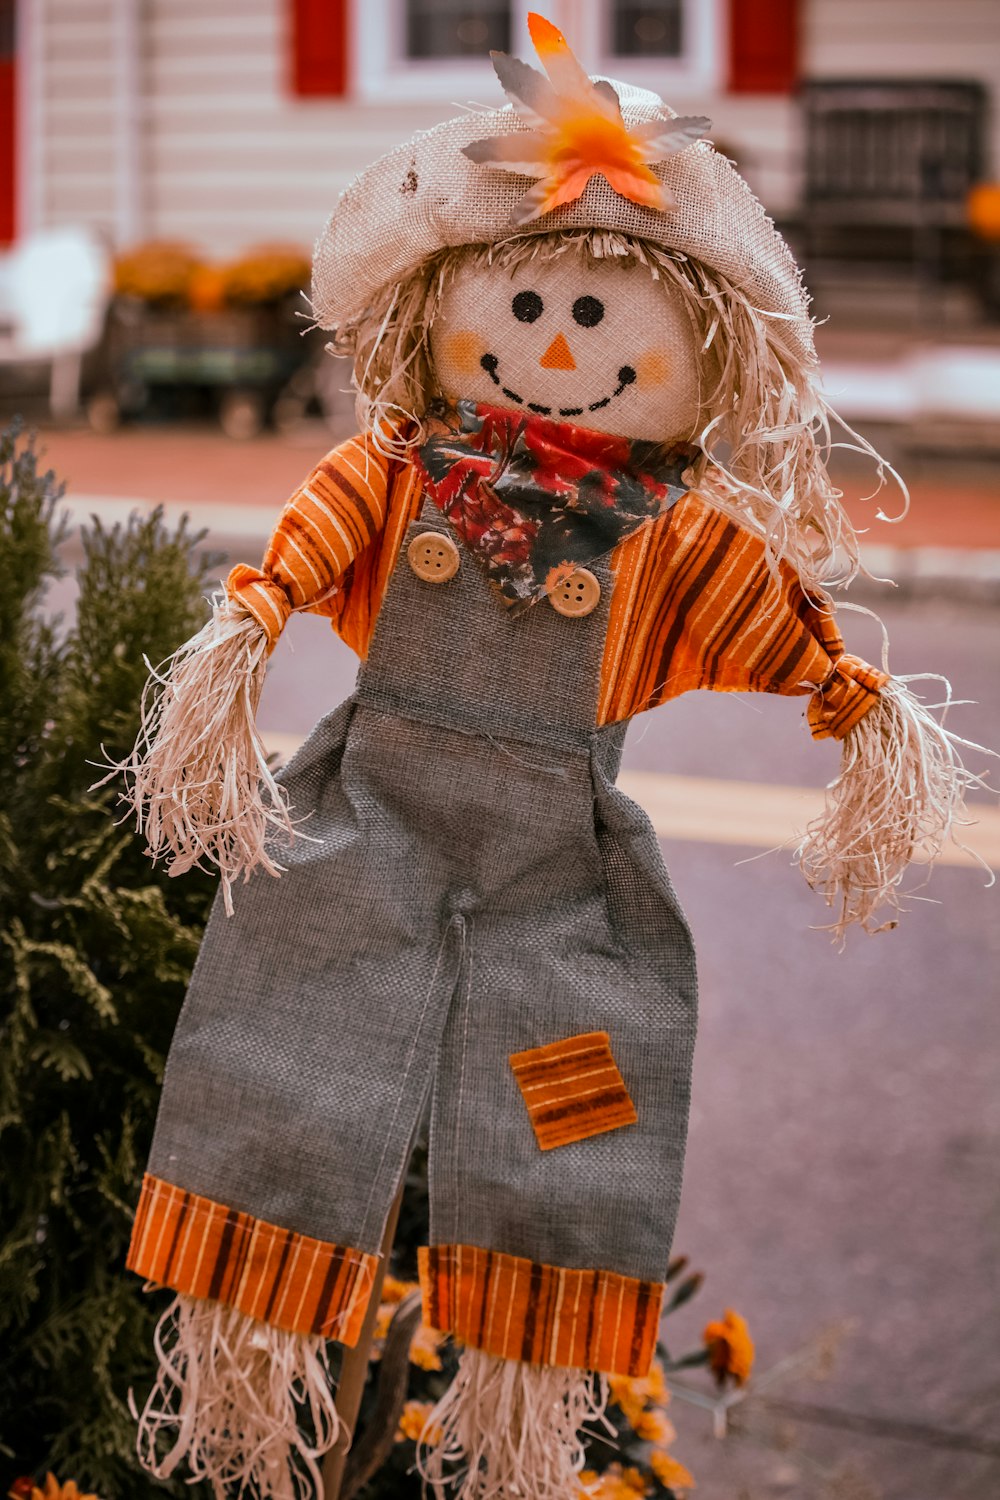 Una muñeca espantapájaros está parada frente a una casa